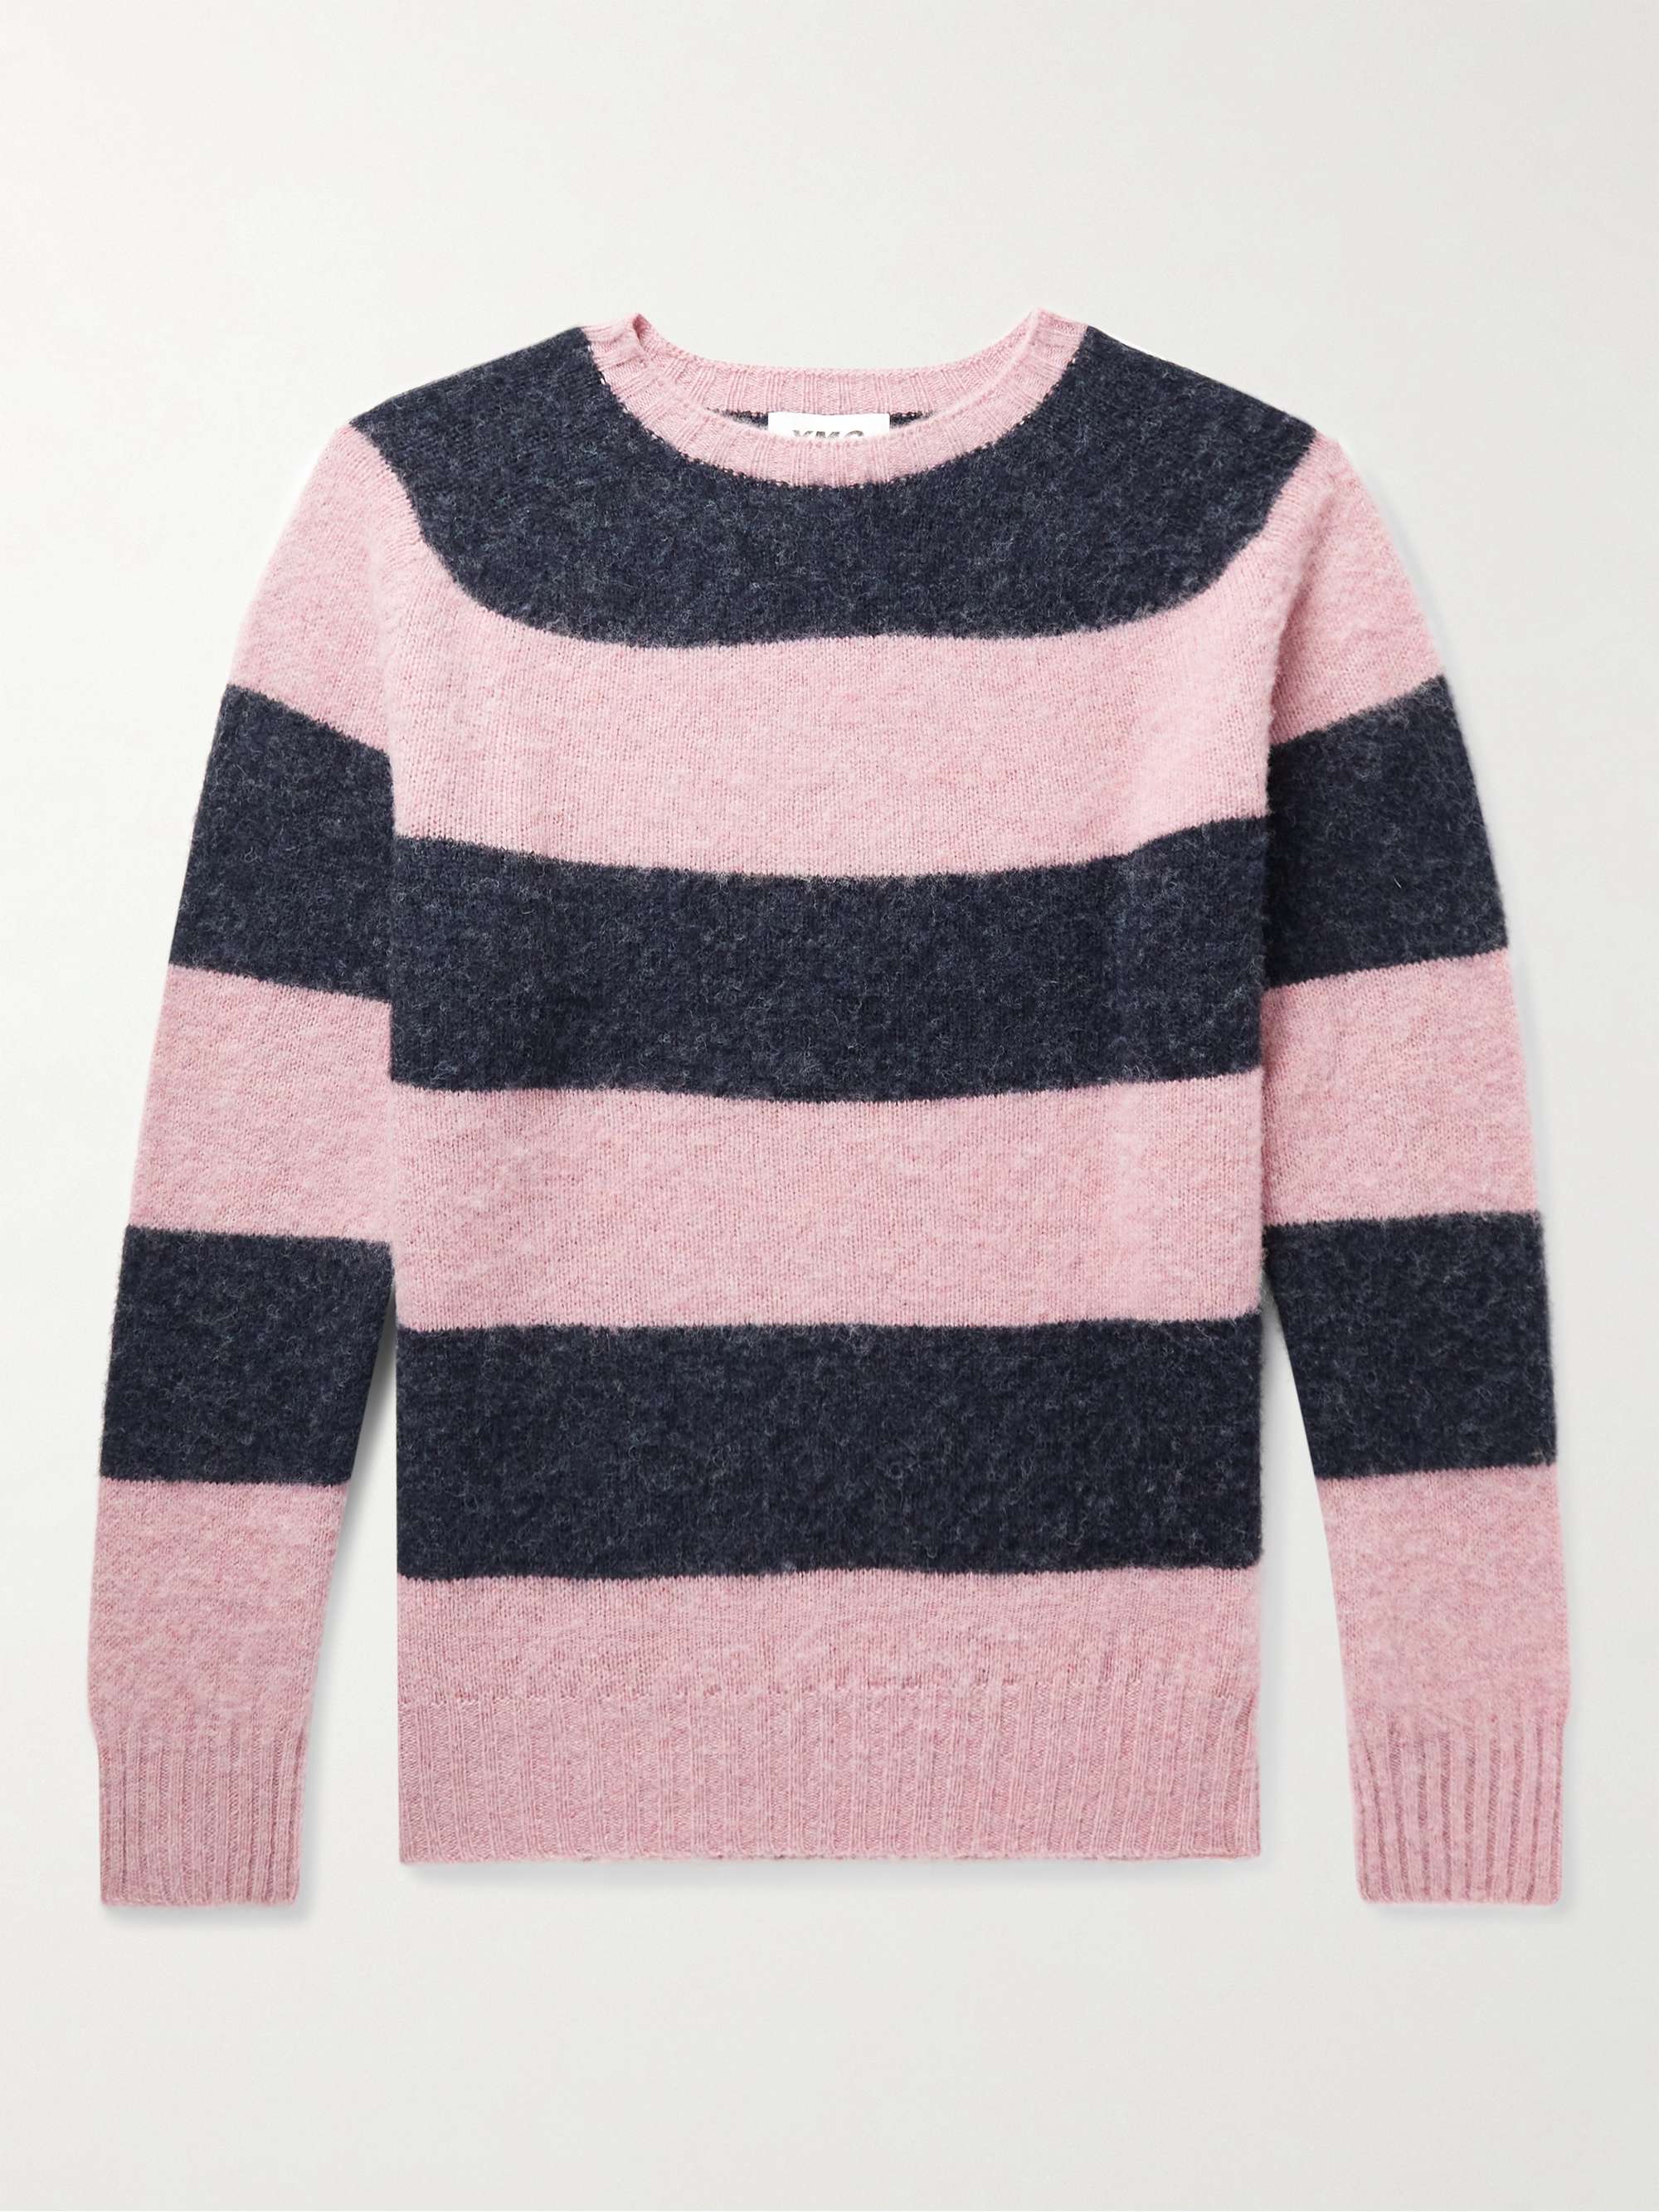 YMC Striped Wool Sweater